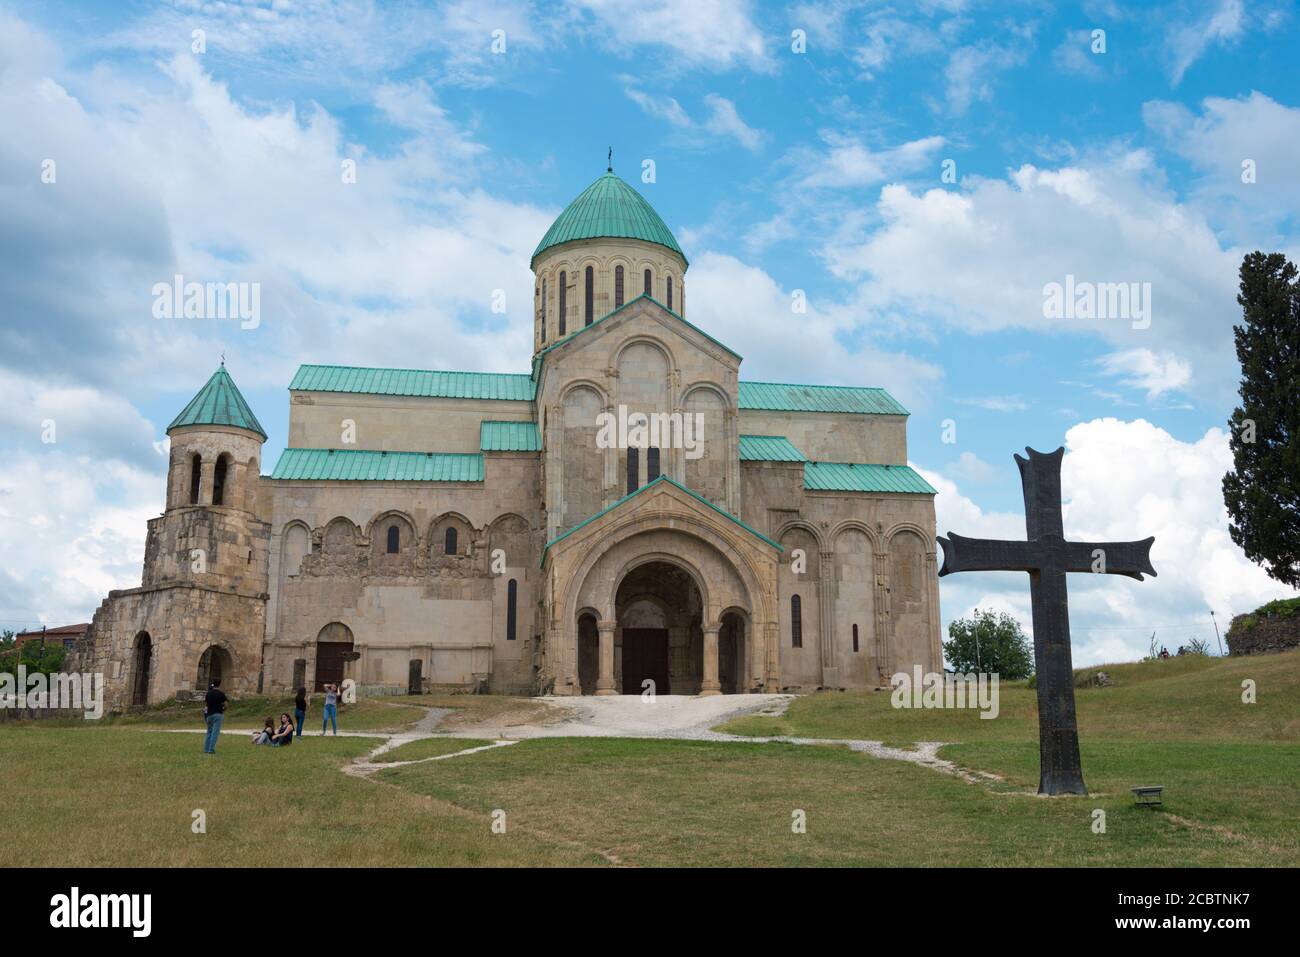 Kutaisi, Georgia - Cattedrale di Bagrati a Kutaisi, Imereti, Georgia. L'UNESCO ha rimosso la Cattedrale di Bagrati dai suoi siti Patrimonio dell'Umanità nel 2017. Foto Stock